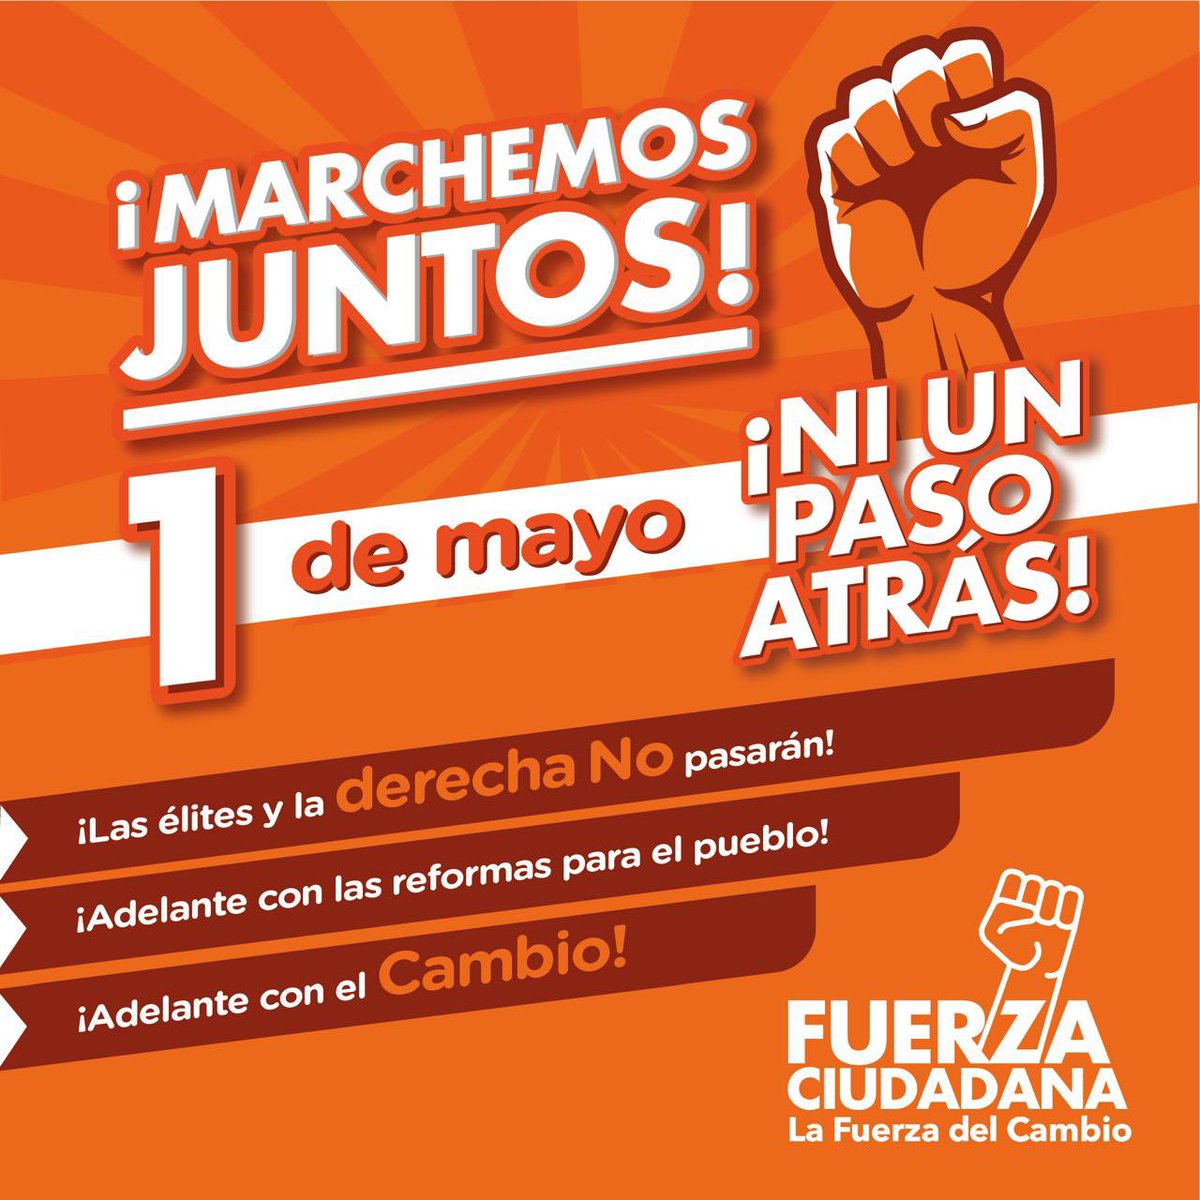 Este 1 de mayo con Fuerza saldremos a las calles en defensa de los derechos laborales y las reformas que necesita el pueblo colombiano para su dignificación. Marcharemos en contra de las élites, las mafias y la ultraderecha que insisten en negar a las mayorías acceso a…